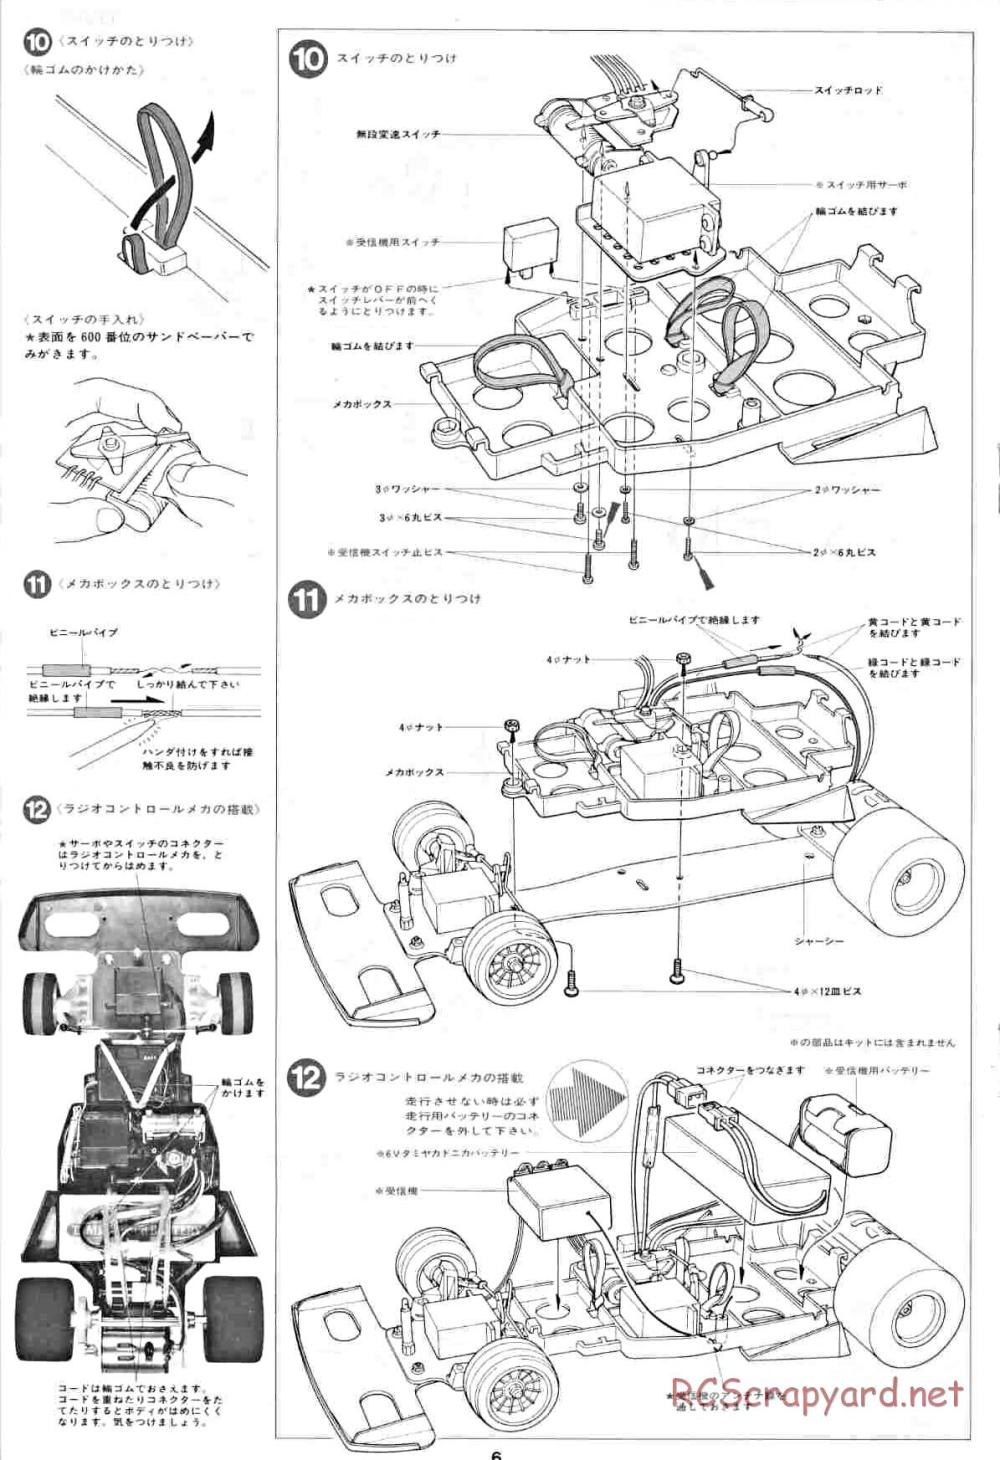 Tamiya - Honda F2 (CS) - 58030 - Manual - Page 6